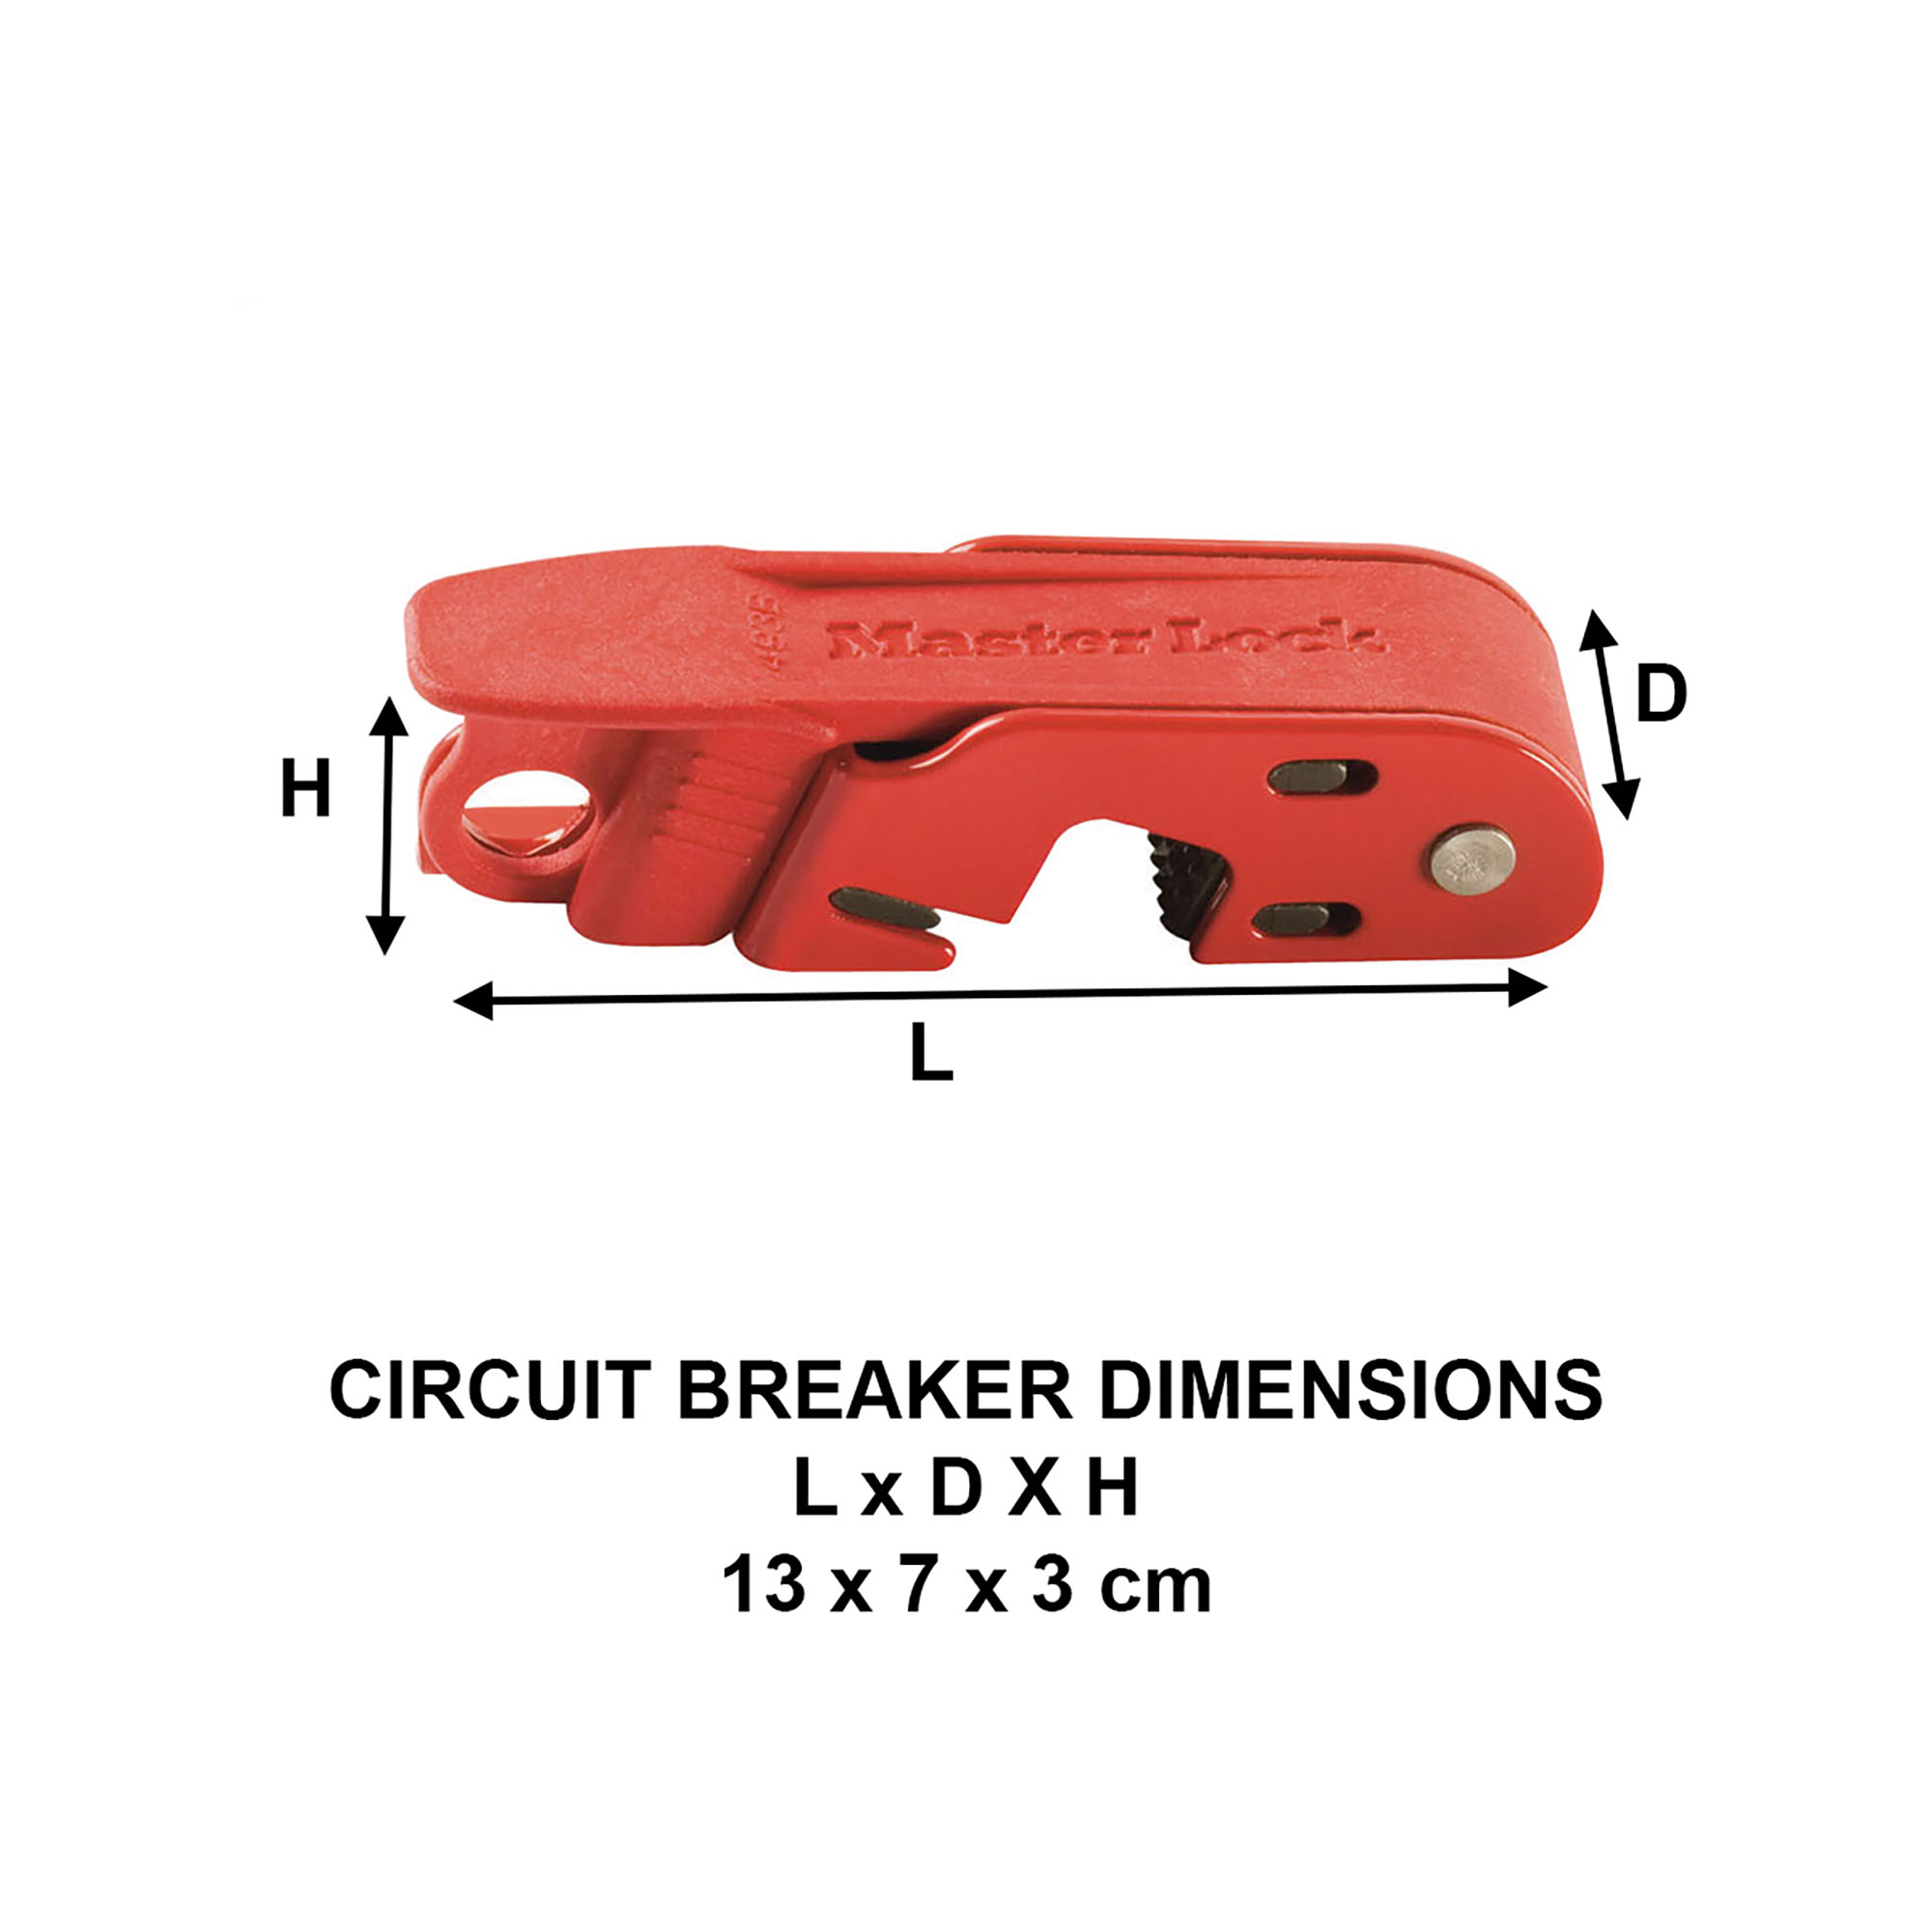 Bloque disjoncteur Grip Tight™ pour Consignation Electrique avec interrupteurs à bascules standard simples et doubles, 13 x 7 x 3 c -Master Lock- Preventimark